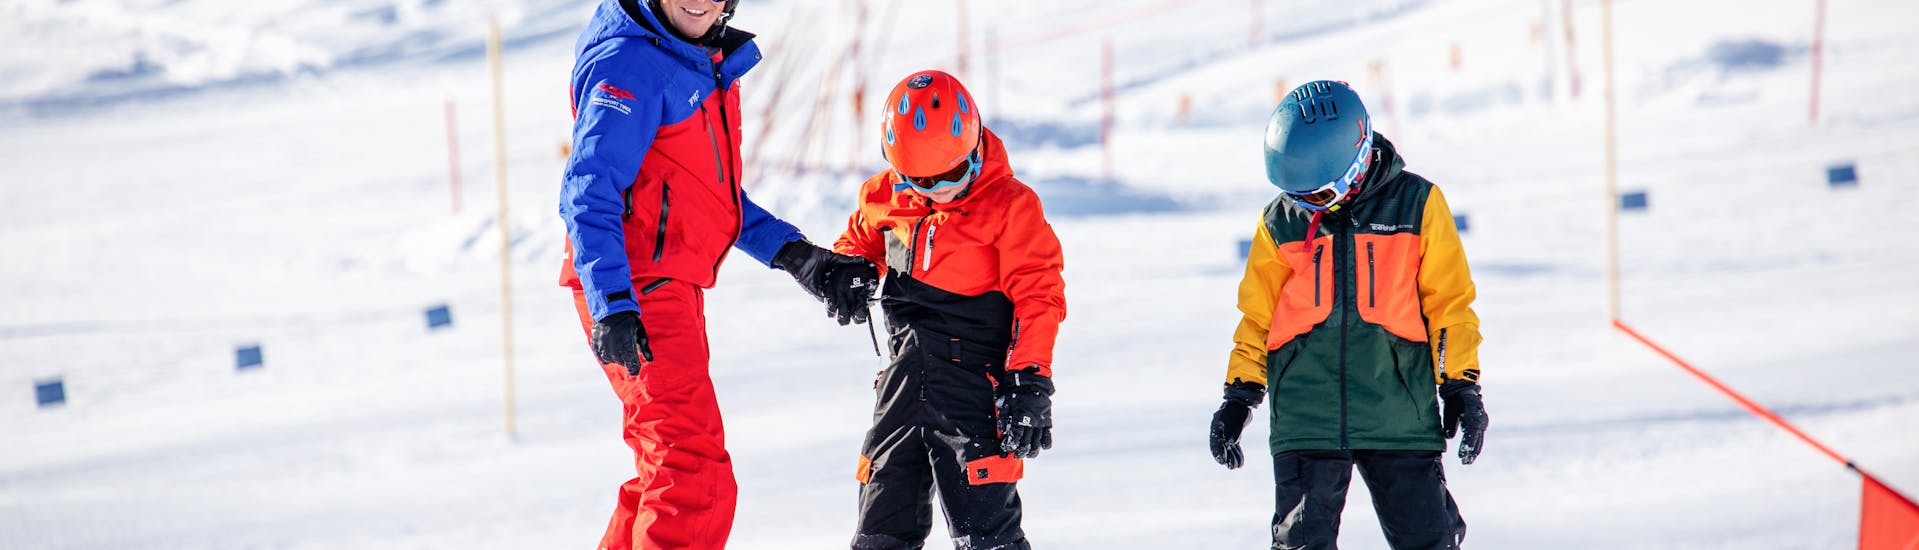 Snowboarder springt op de piste in snowboardcursus voor kinderen & volwassenen - gevorderd.